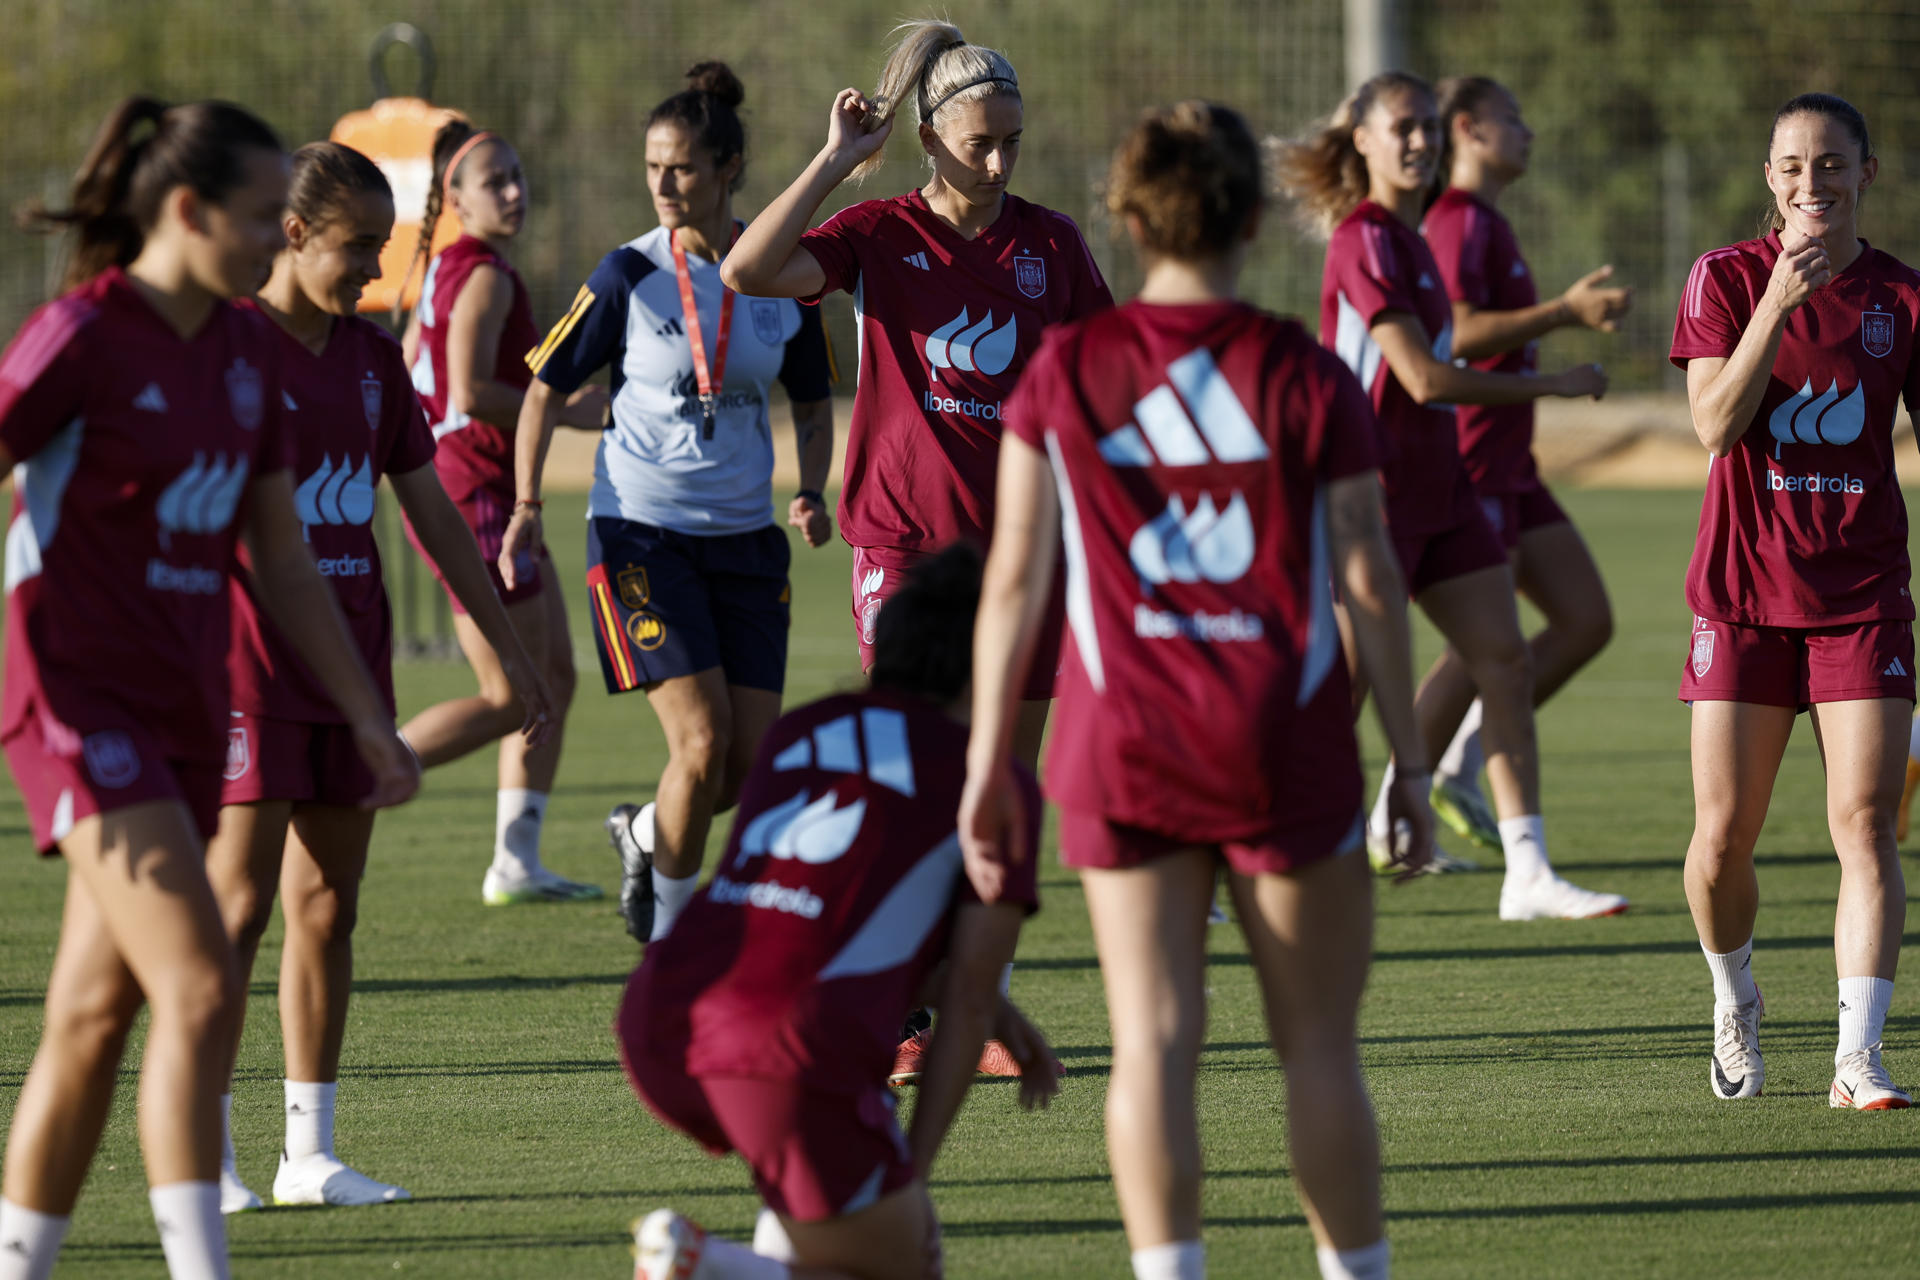 Las integrantes de la selección nacional femenina de fútbol durante el entrenamiento realizado este miércoles en Oliva (Valencia) para preparar su debut, este viernes, en la Liga de Naciones. EFE/Biel Aliño